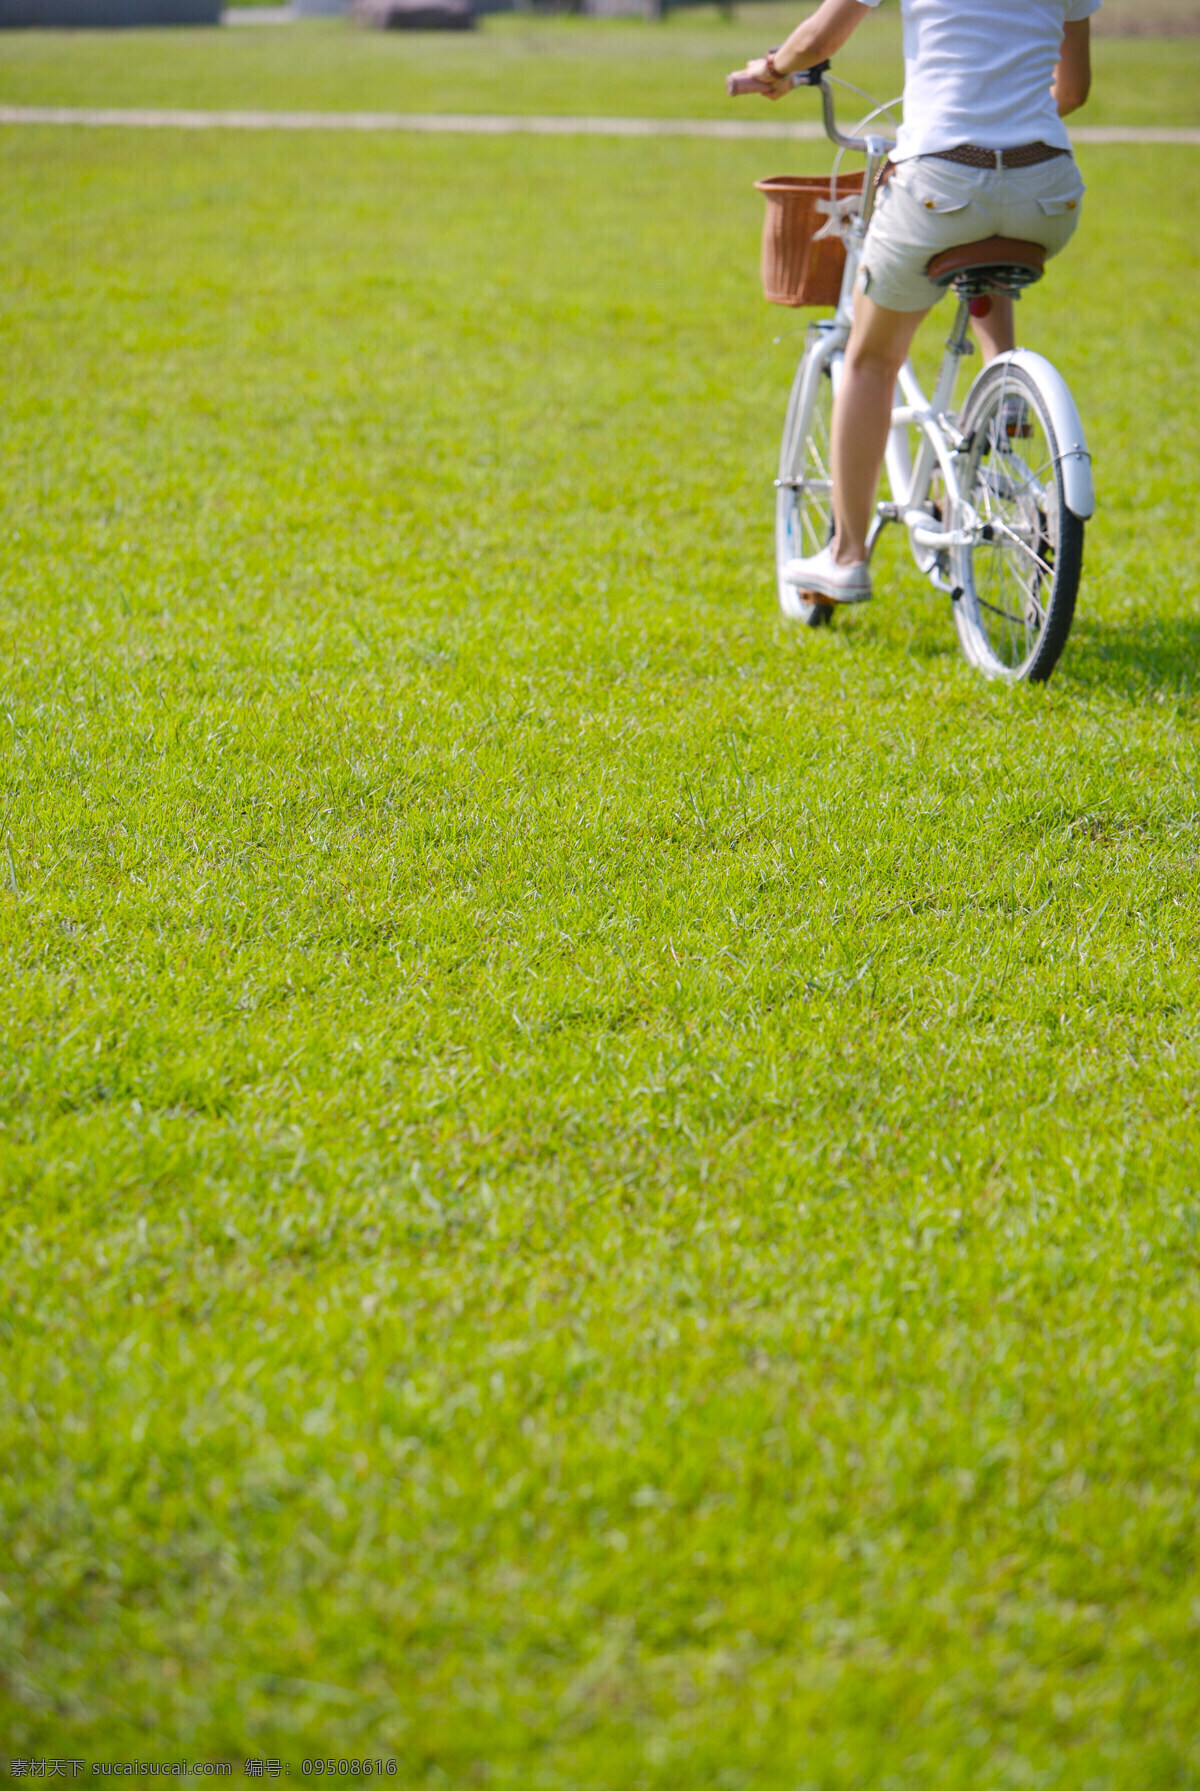 亲子 休闲 脚踏车 草坪 车道 风景 户外运动 赛车 自行车